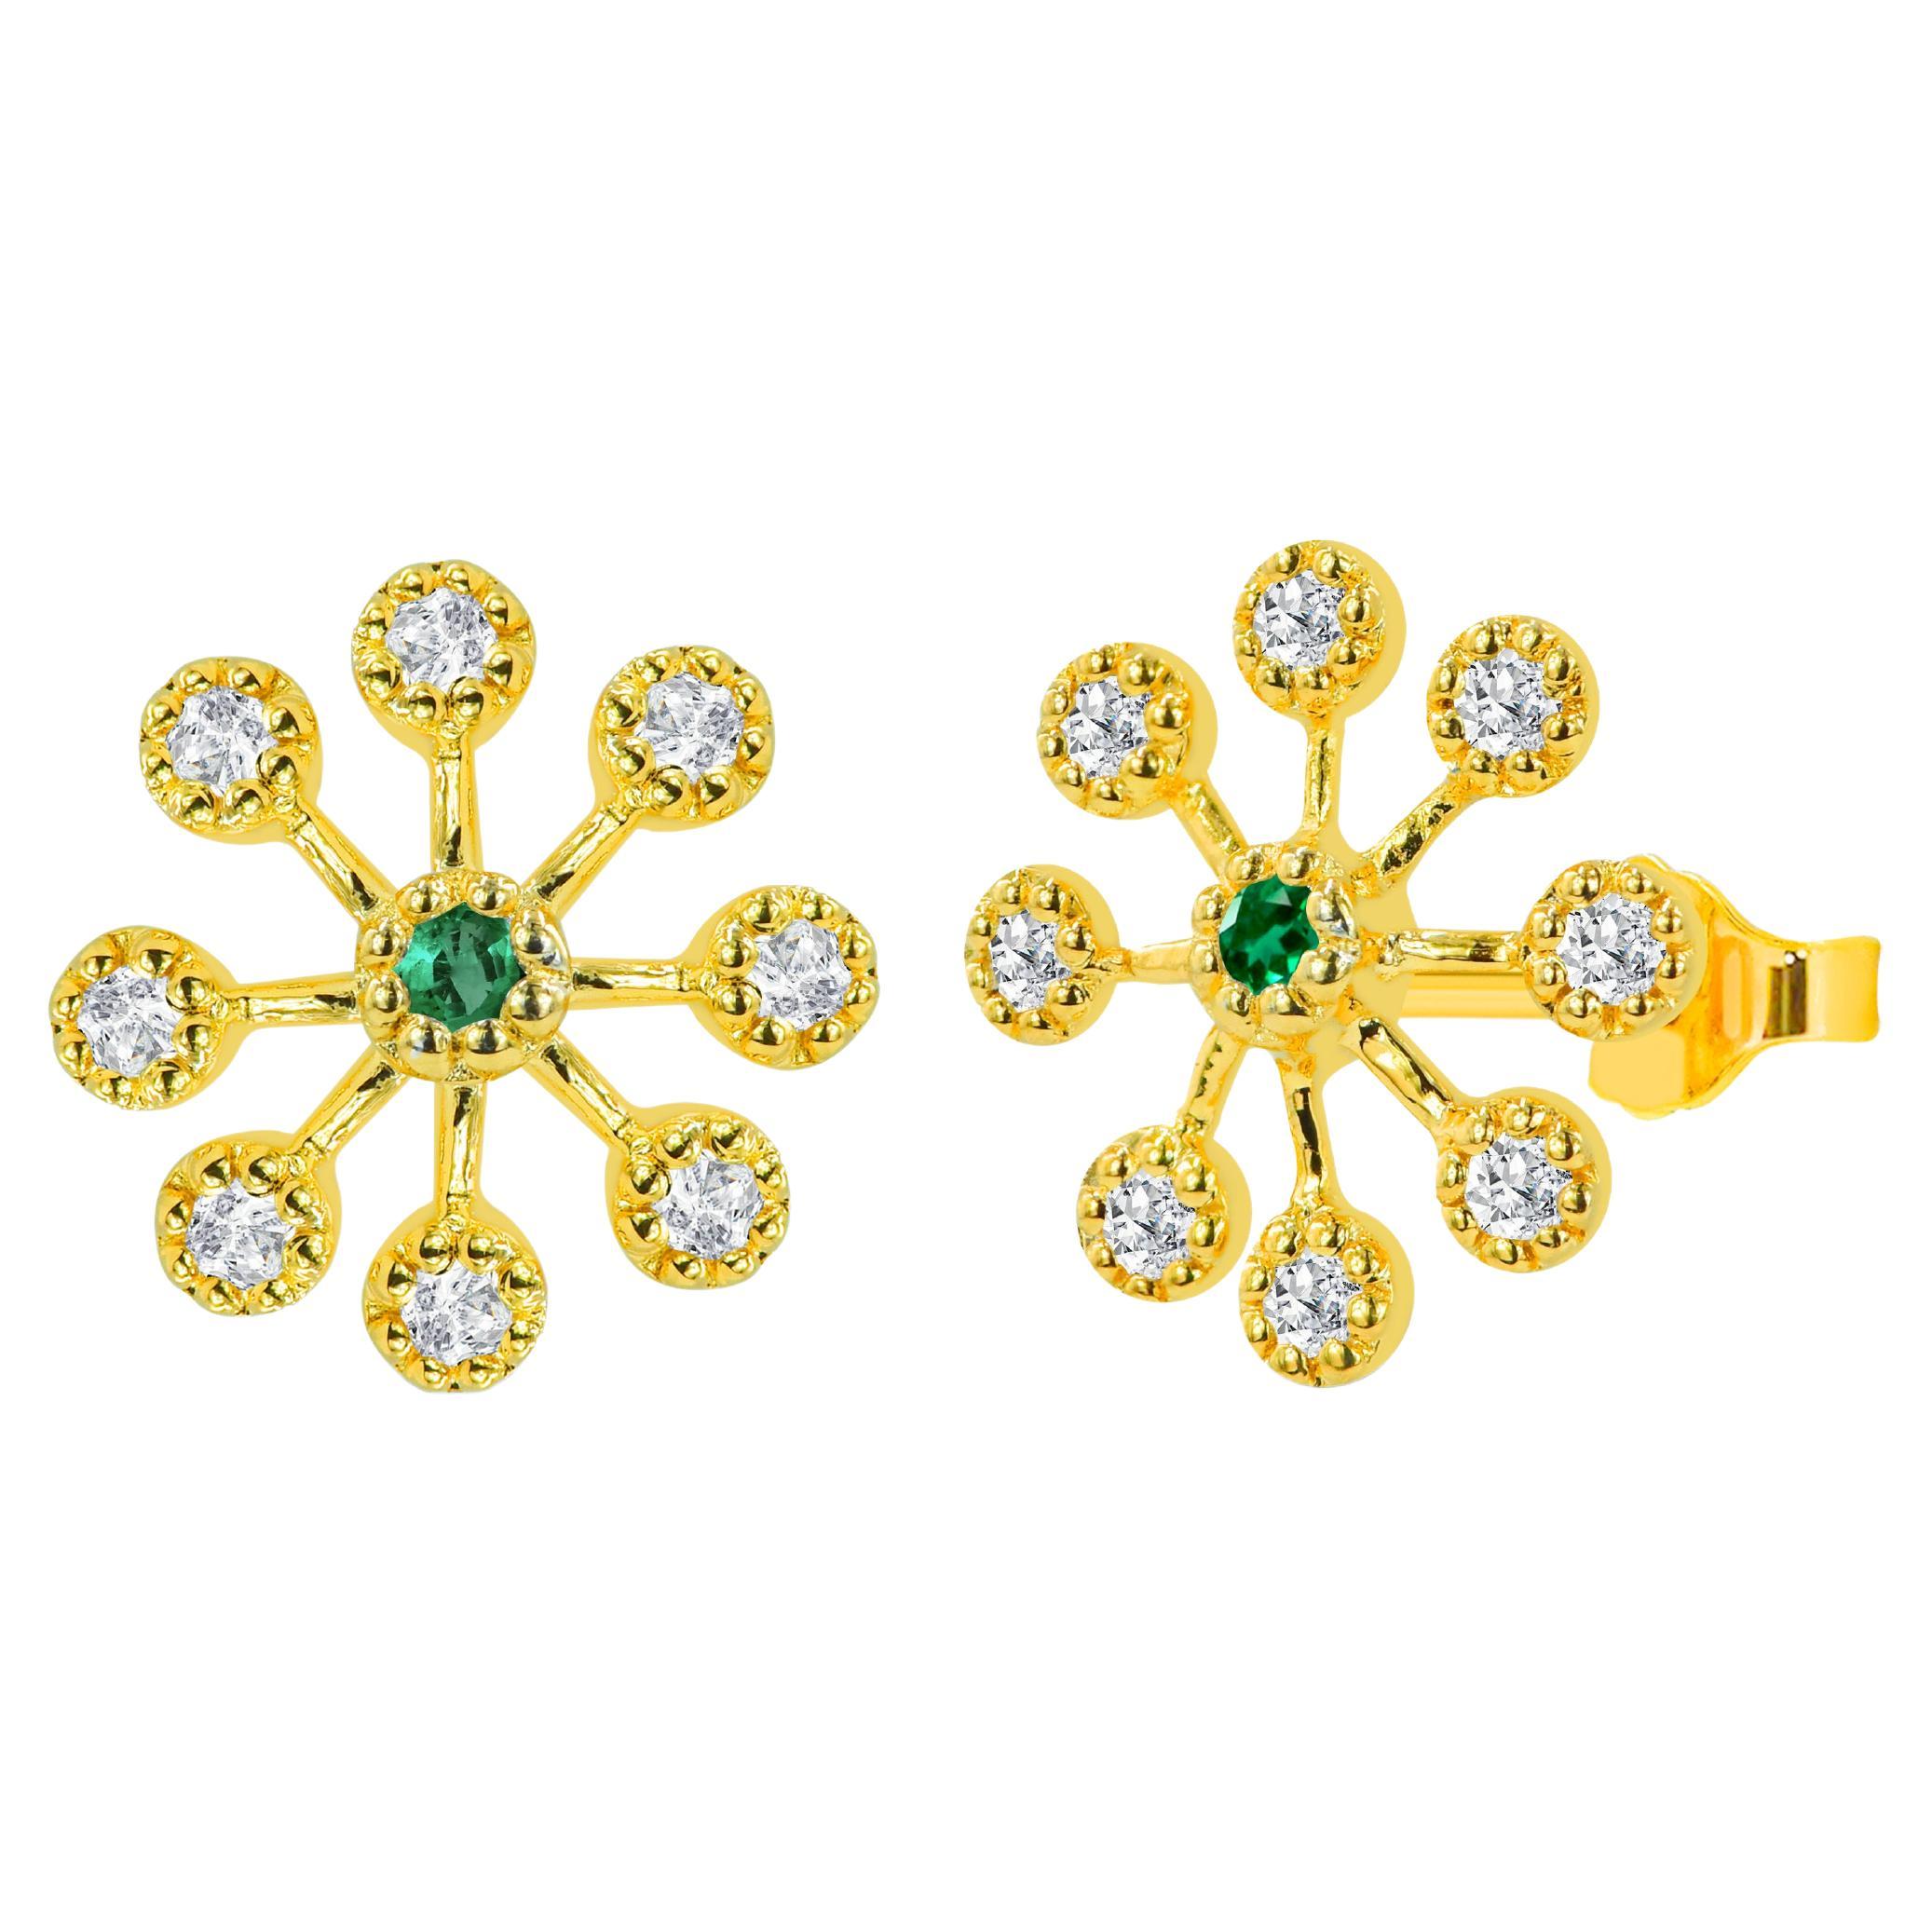 Clous d'oreilles fleur en or 18 carats avec diamants, émeraudes et saphirs de 0,30 carat